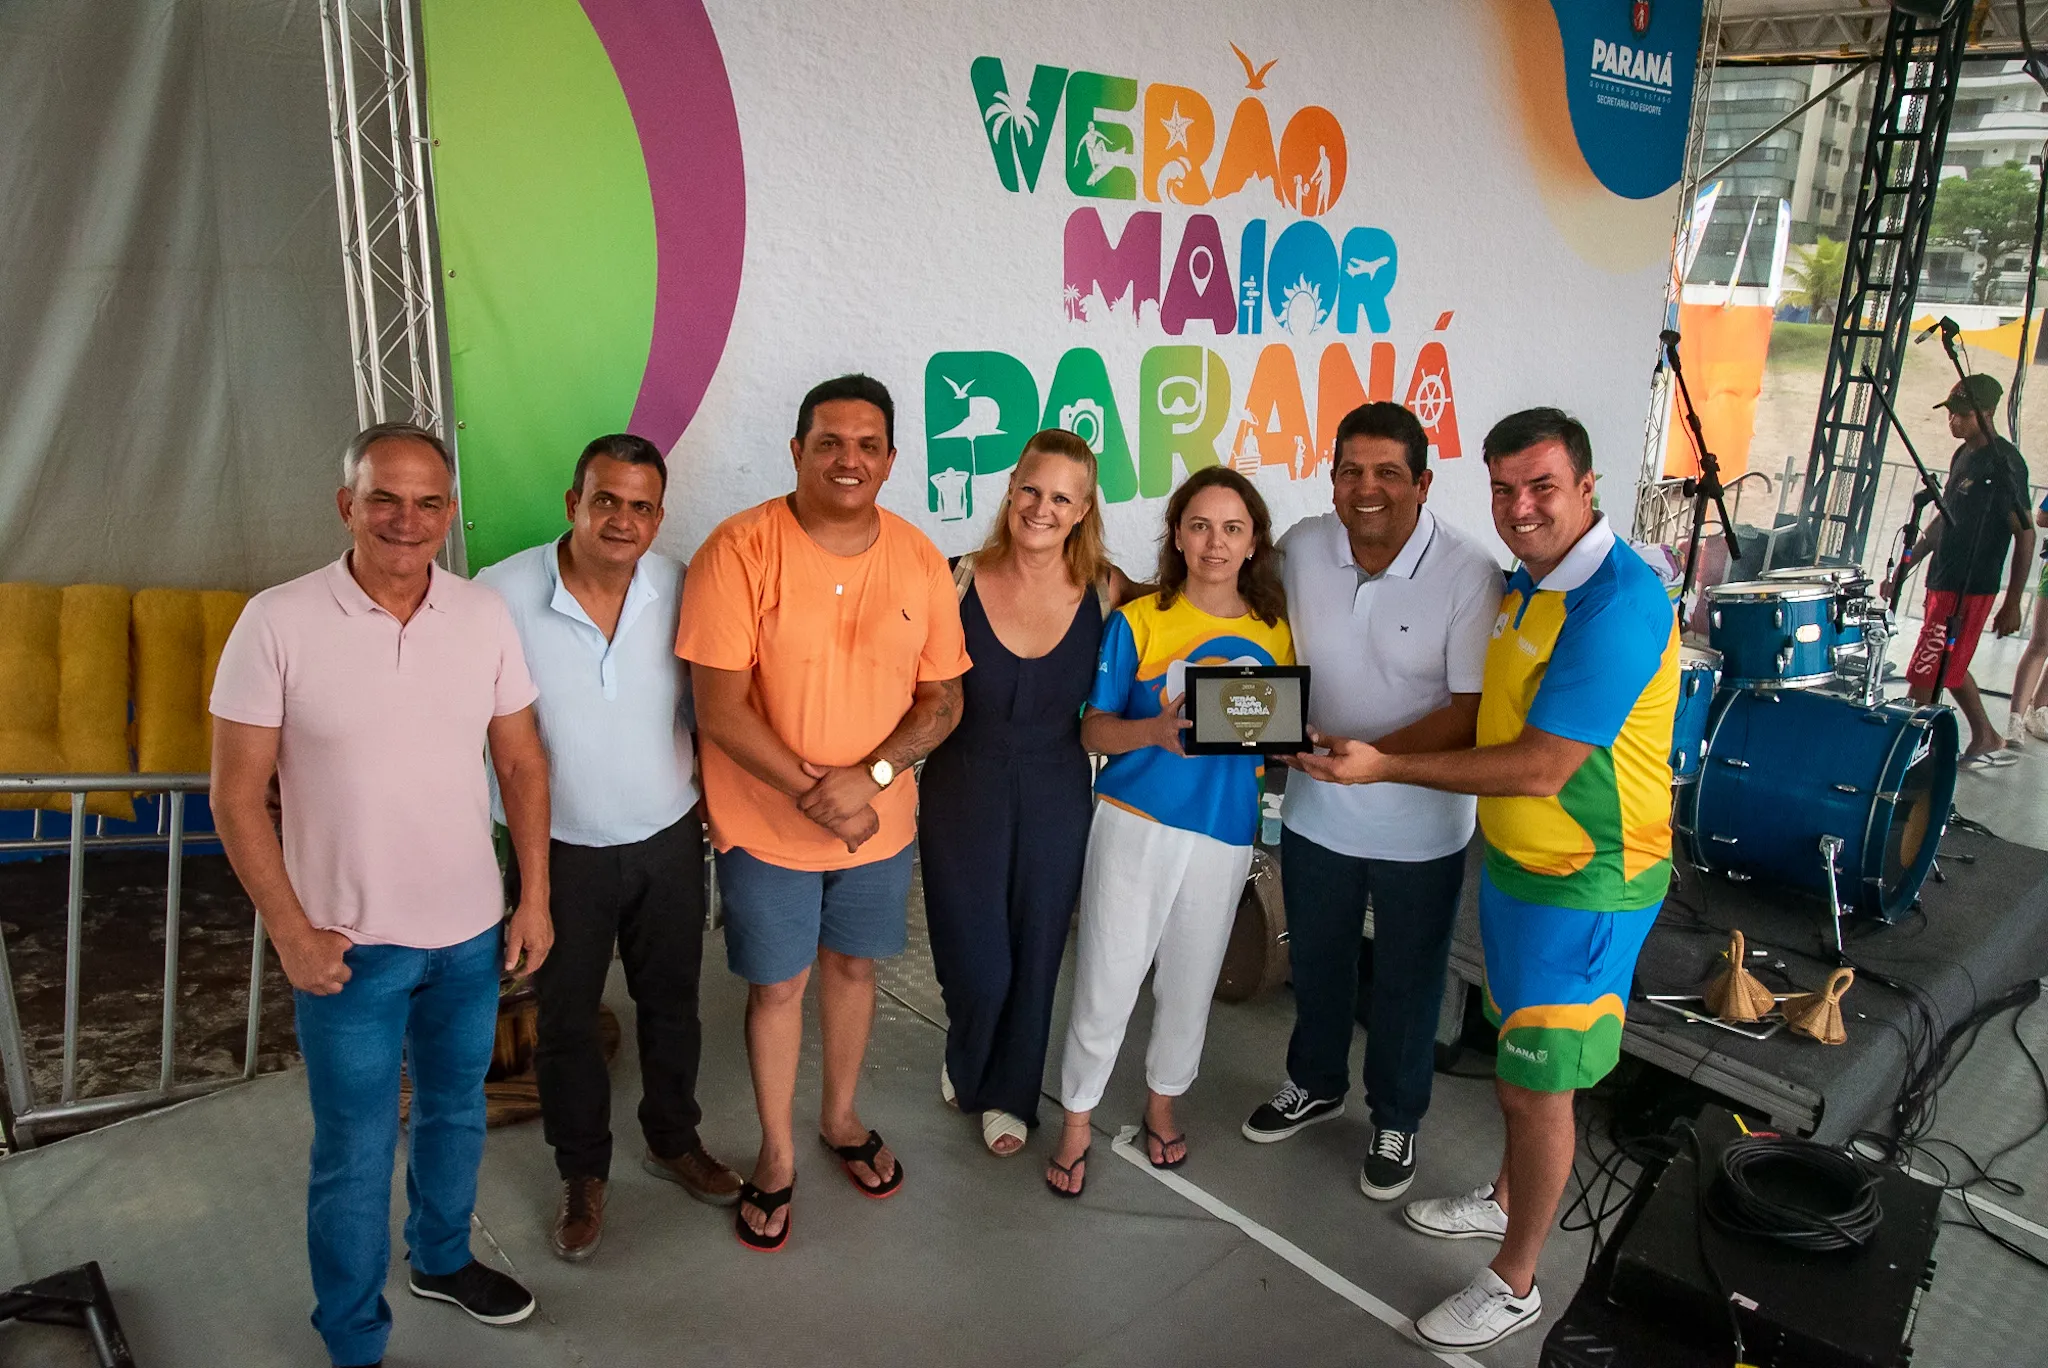 Verão Maior Paraná ganha reconhecimento do Ecad por respeitar direitos autorais